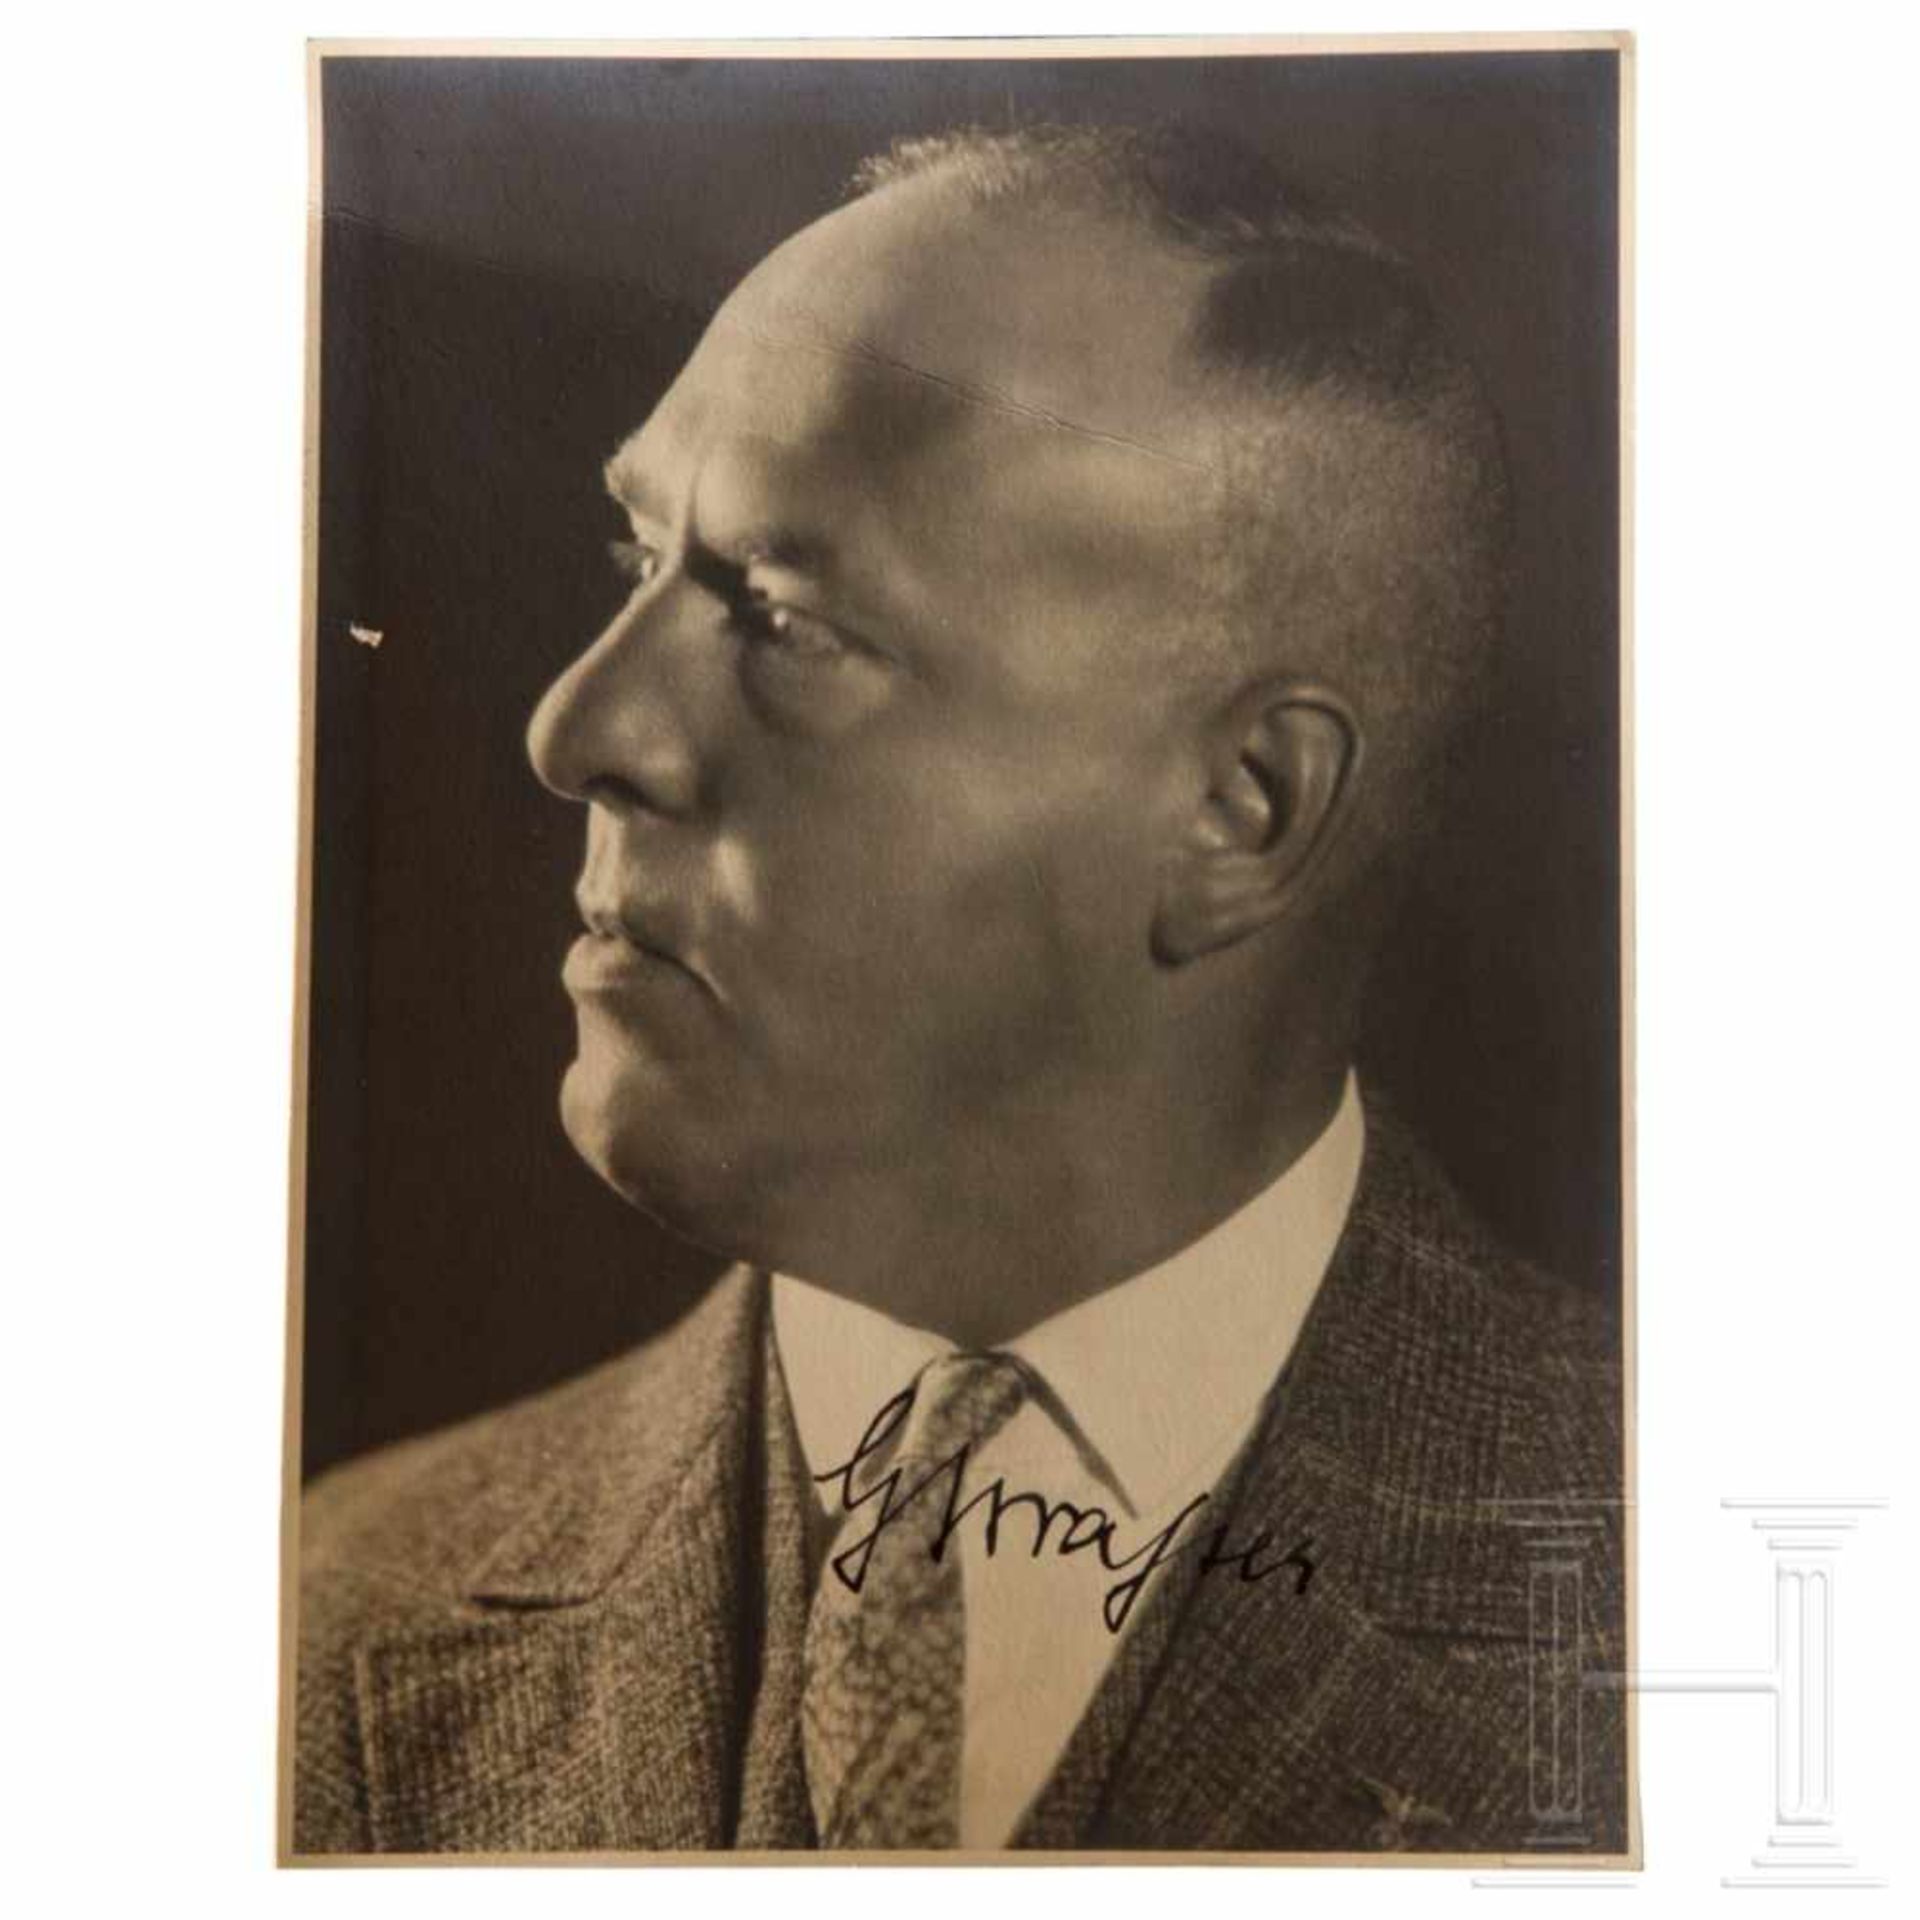 Großformatiges Hoffmann-Portraitfoto Gregor Strassers mit eigenhändiger Signatur